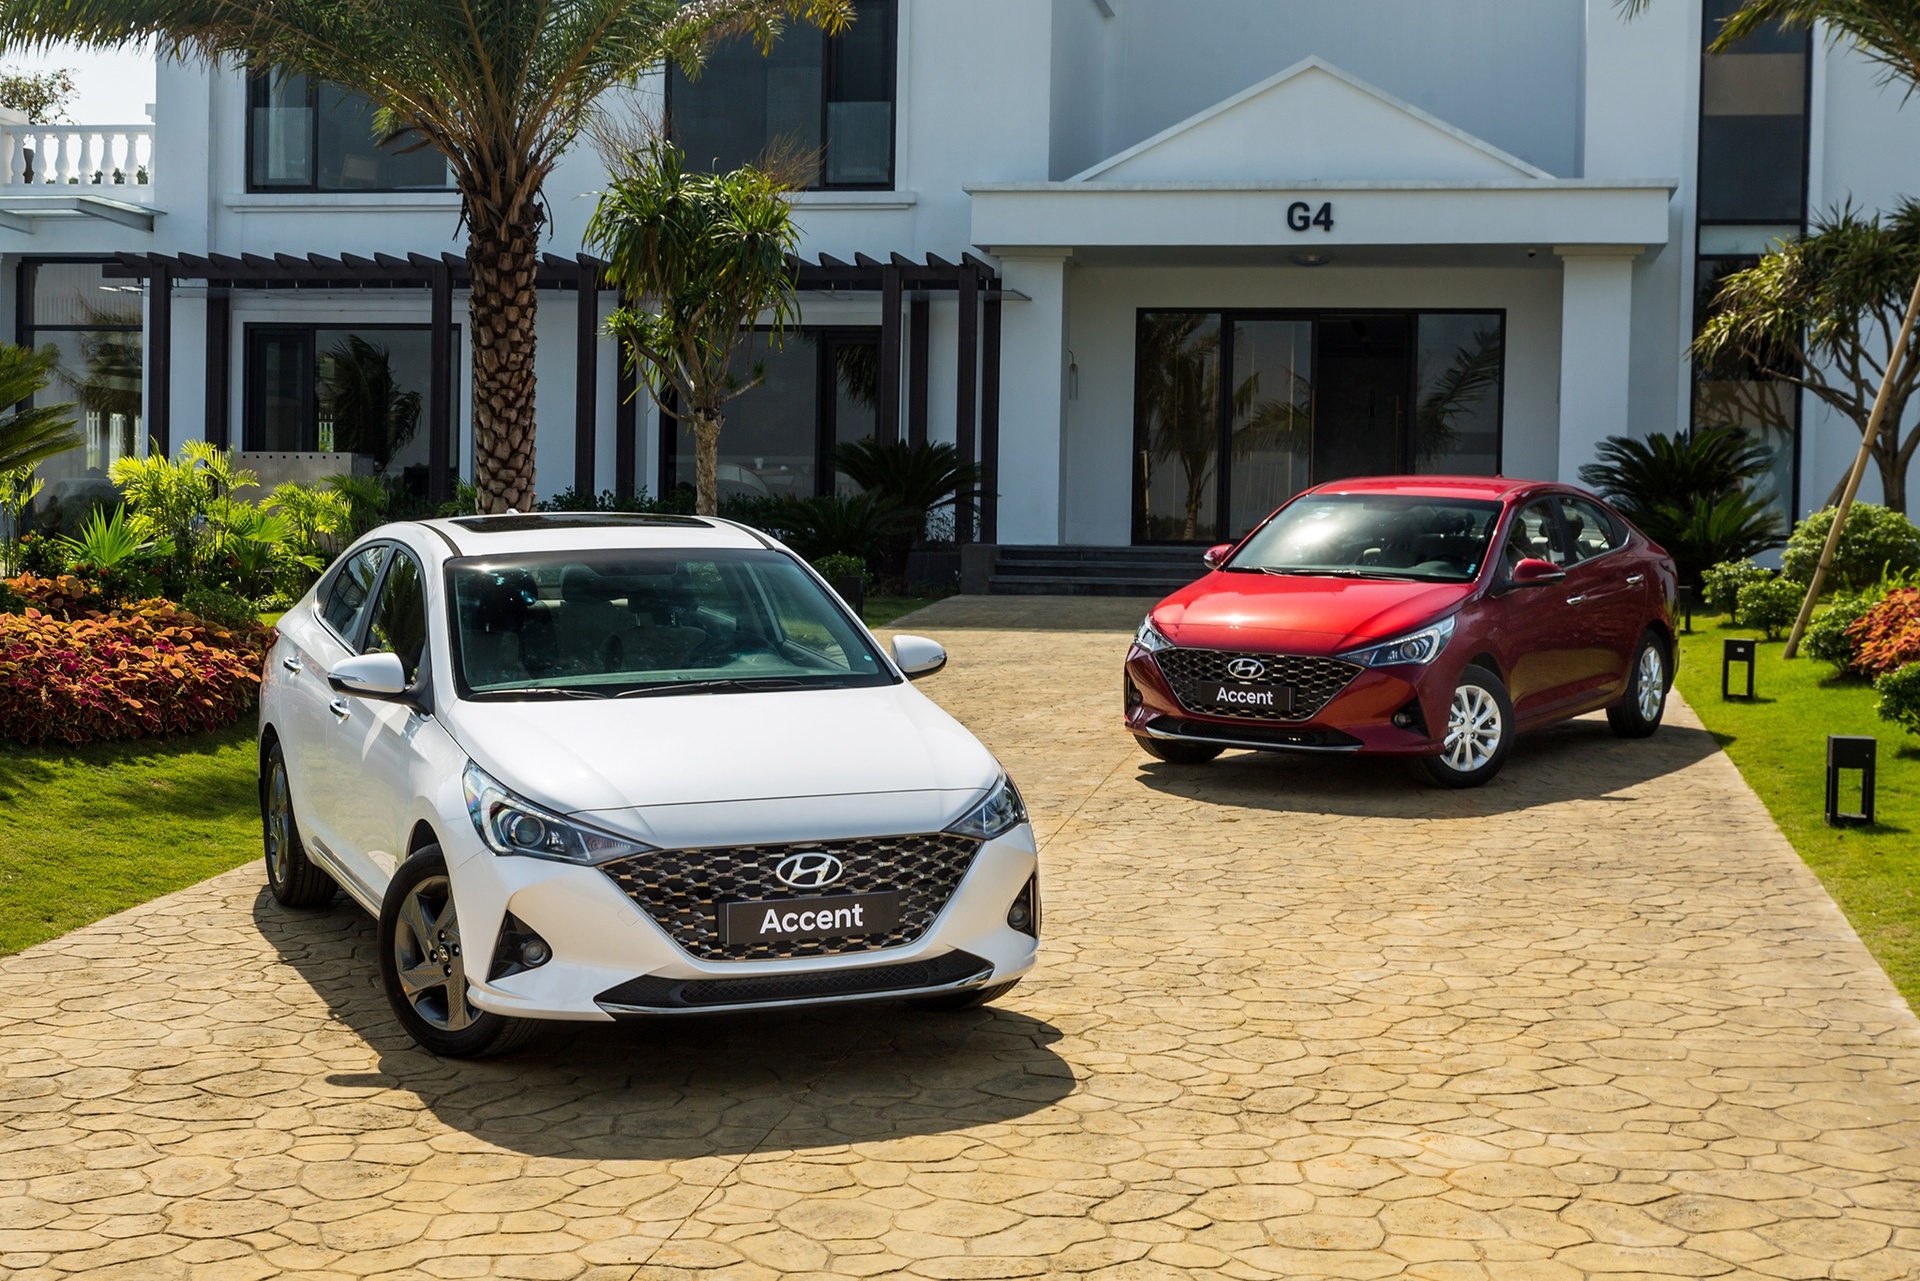 Doanh số tăng mạnh, Hyundai bán nhiều ô tô nhất Việt Nam tháng 10 - Ảnh 2.